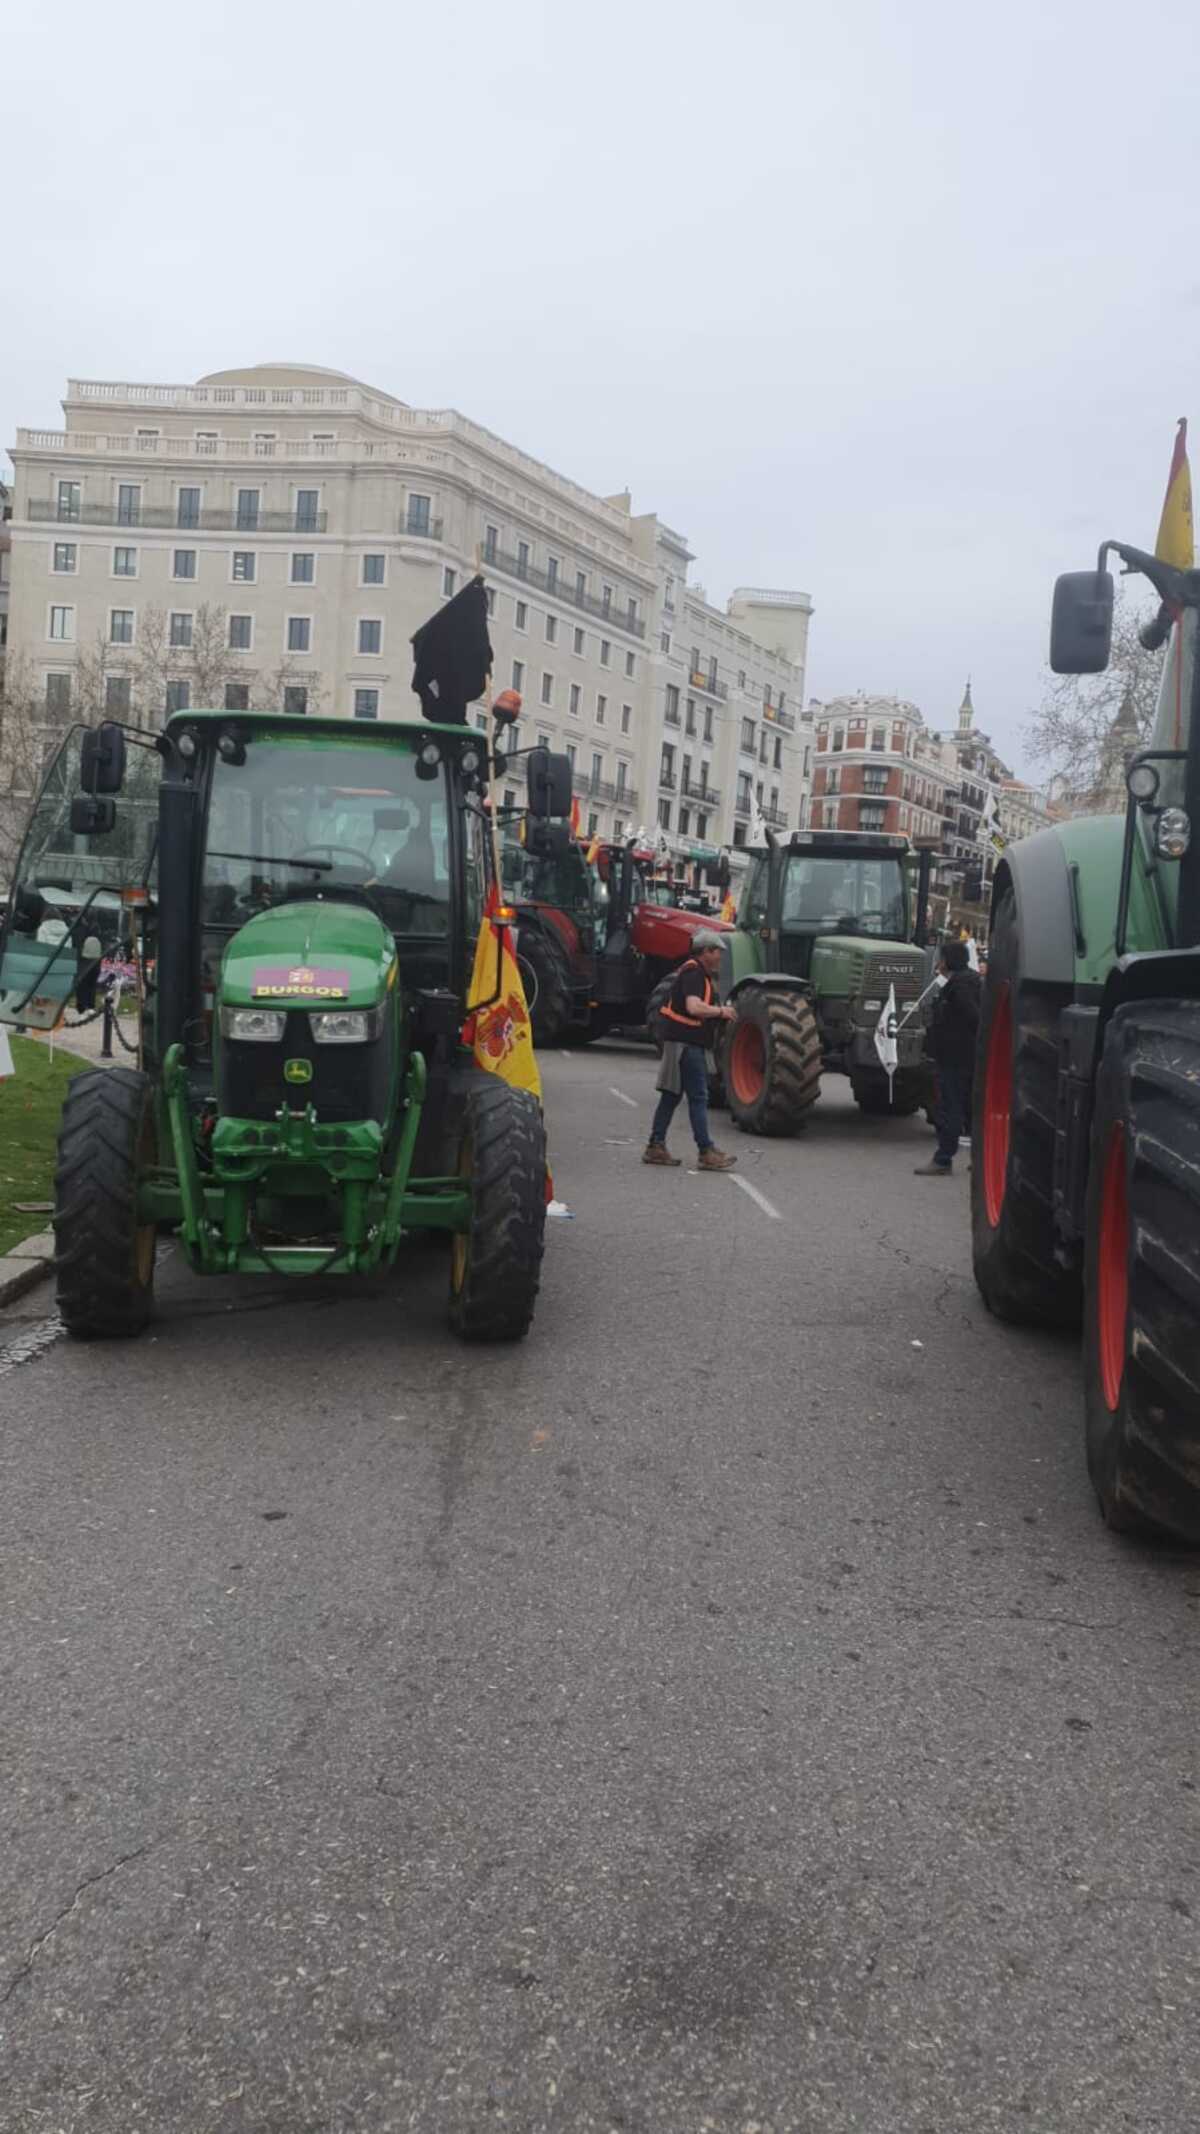 Tractorada de agricultores y ganaderos burgaleses en Madrid.  / Diario de Burgos